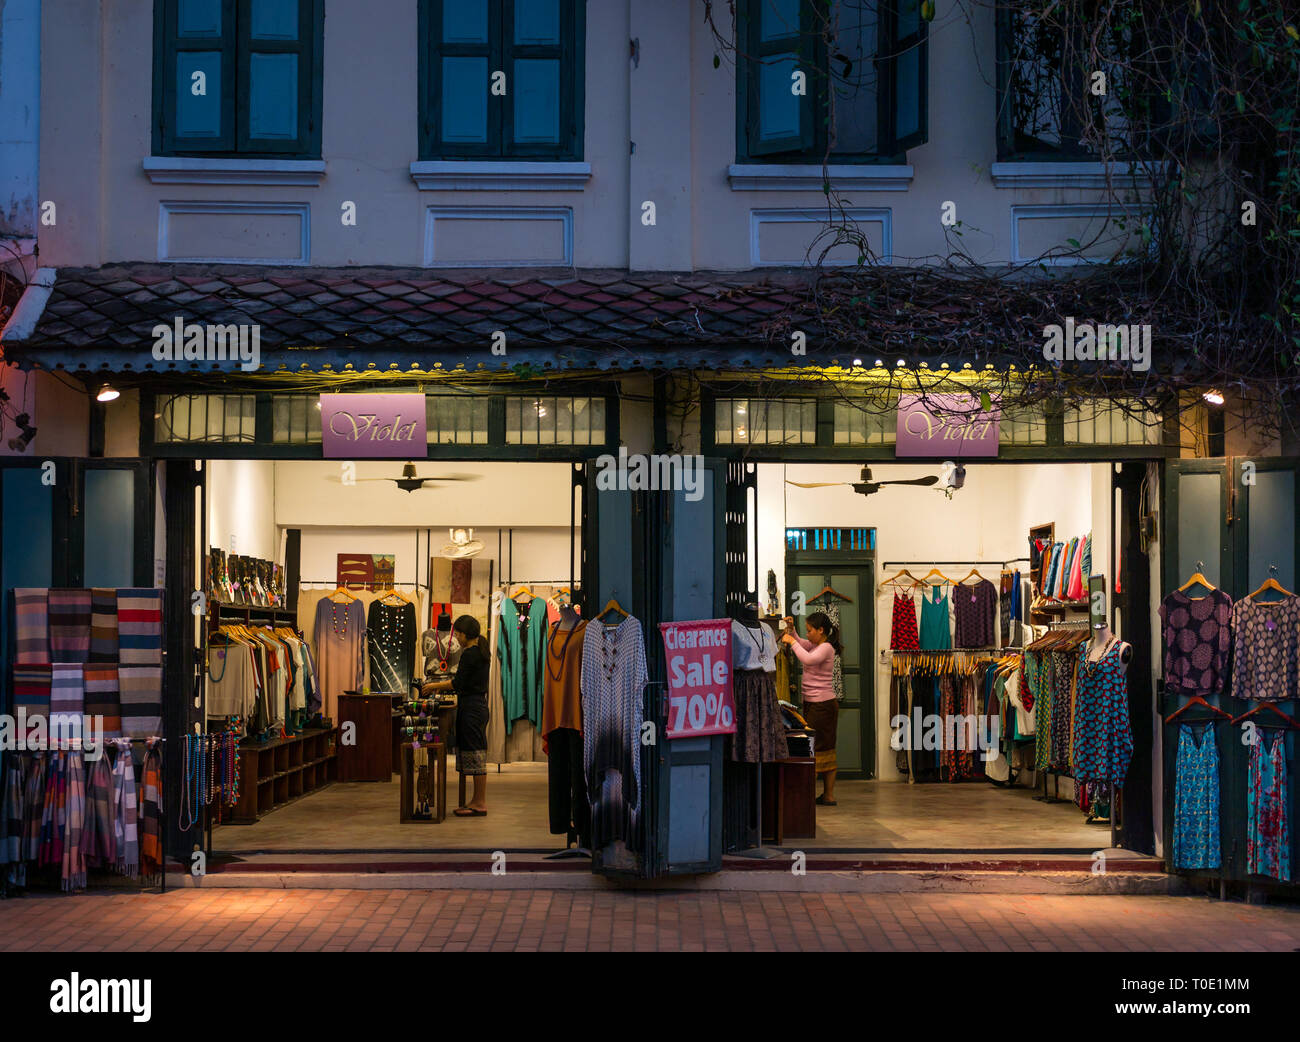 La tienda de ropa para mujer llamada Violet vendiendo vestidos, mantones y joyas abierta por la noche ofreciendo una venta de hasta un 70% de descuento, Luang Prabang, Laos, se Asia Foto de stock